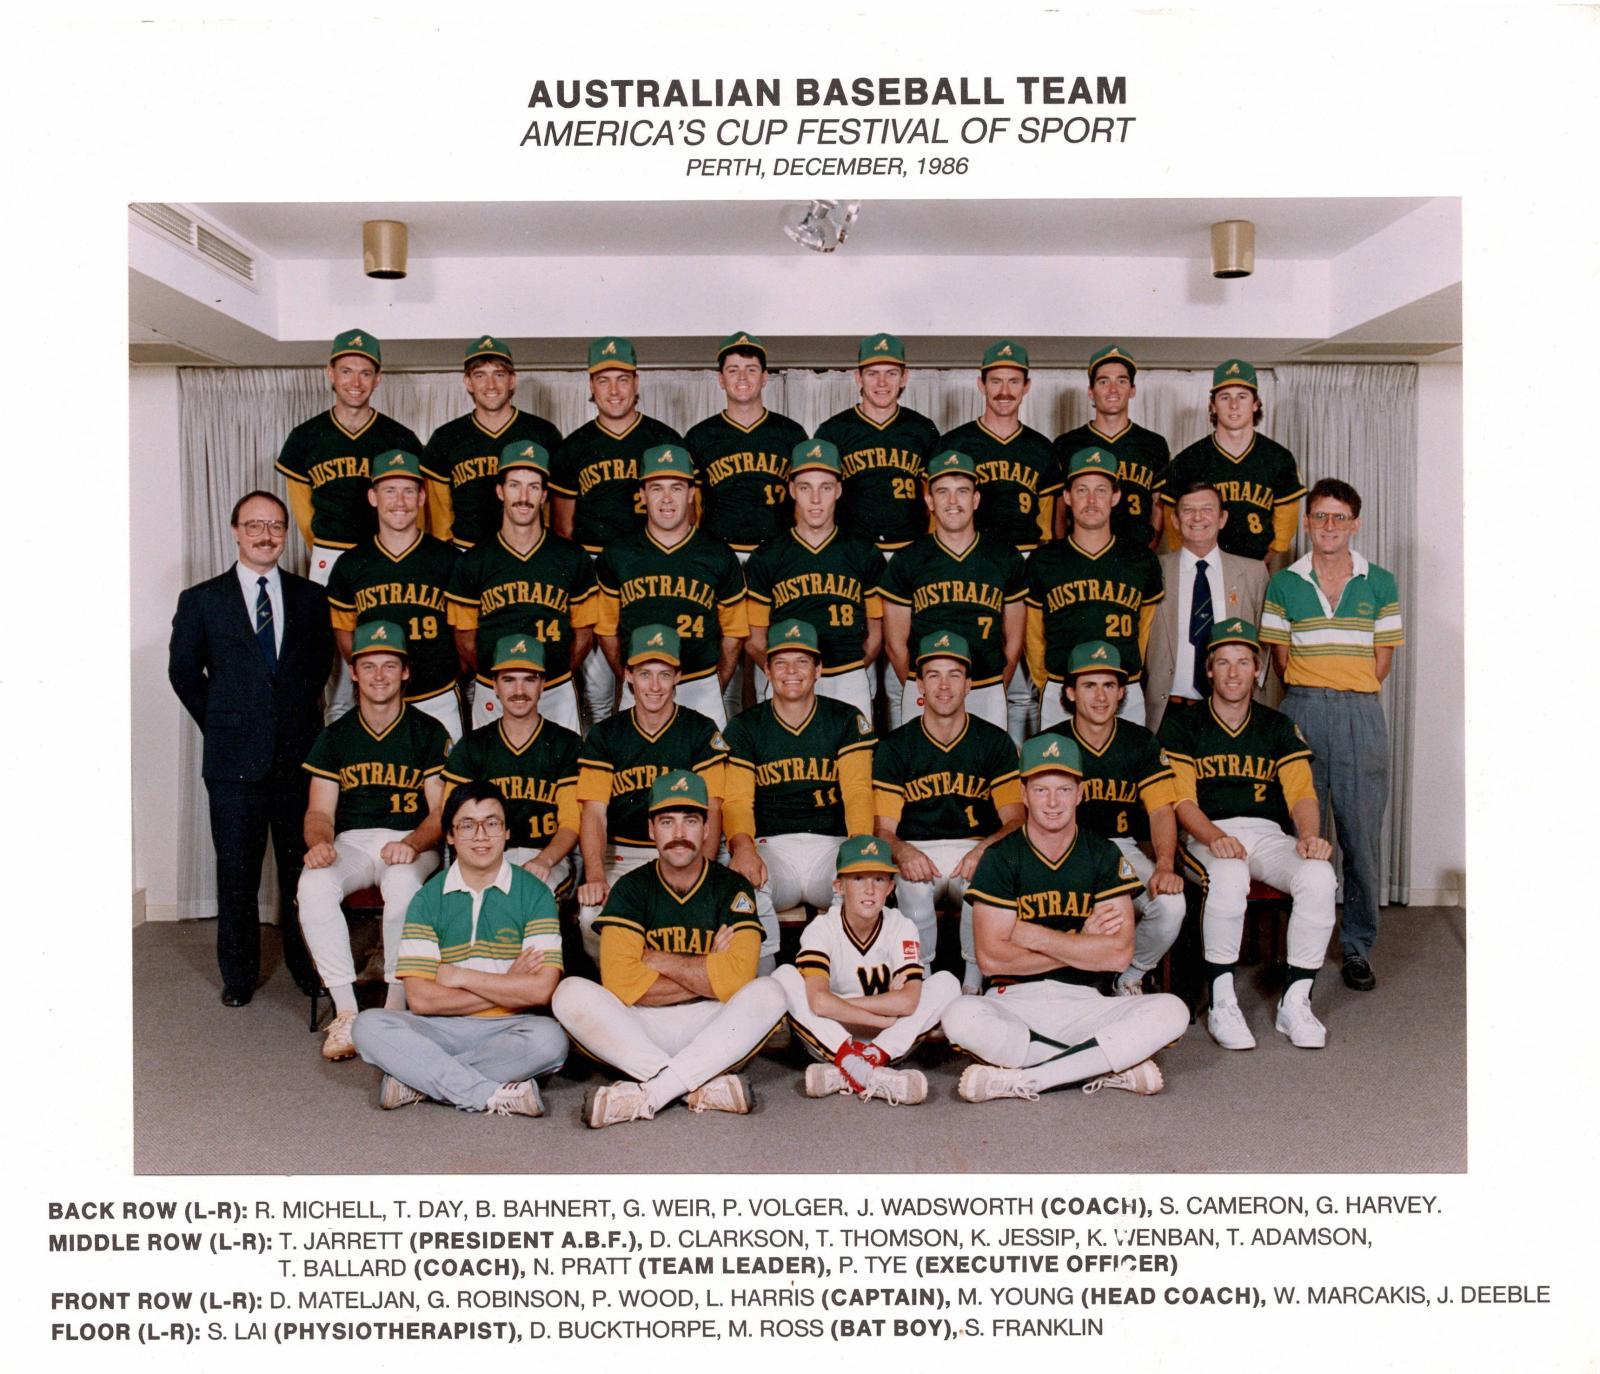 1986 Australian Baseball Team - America's Cup Festival of Sport